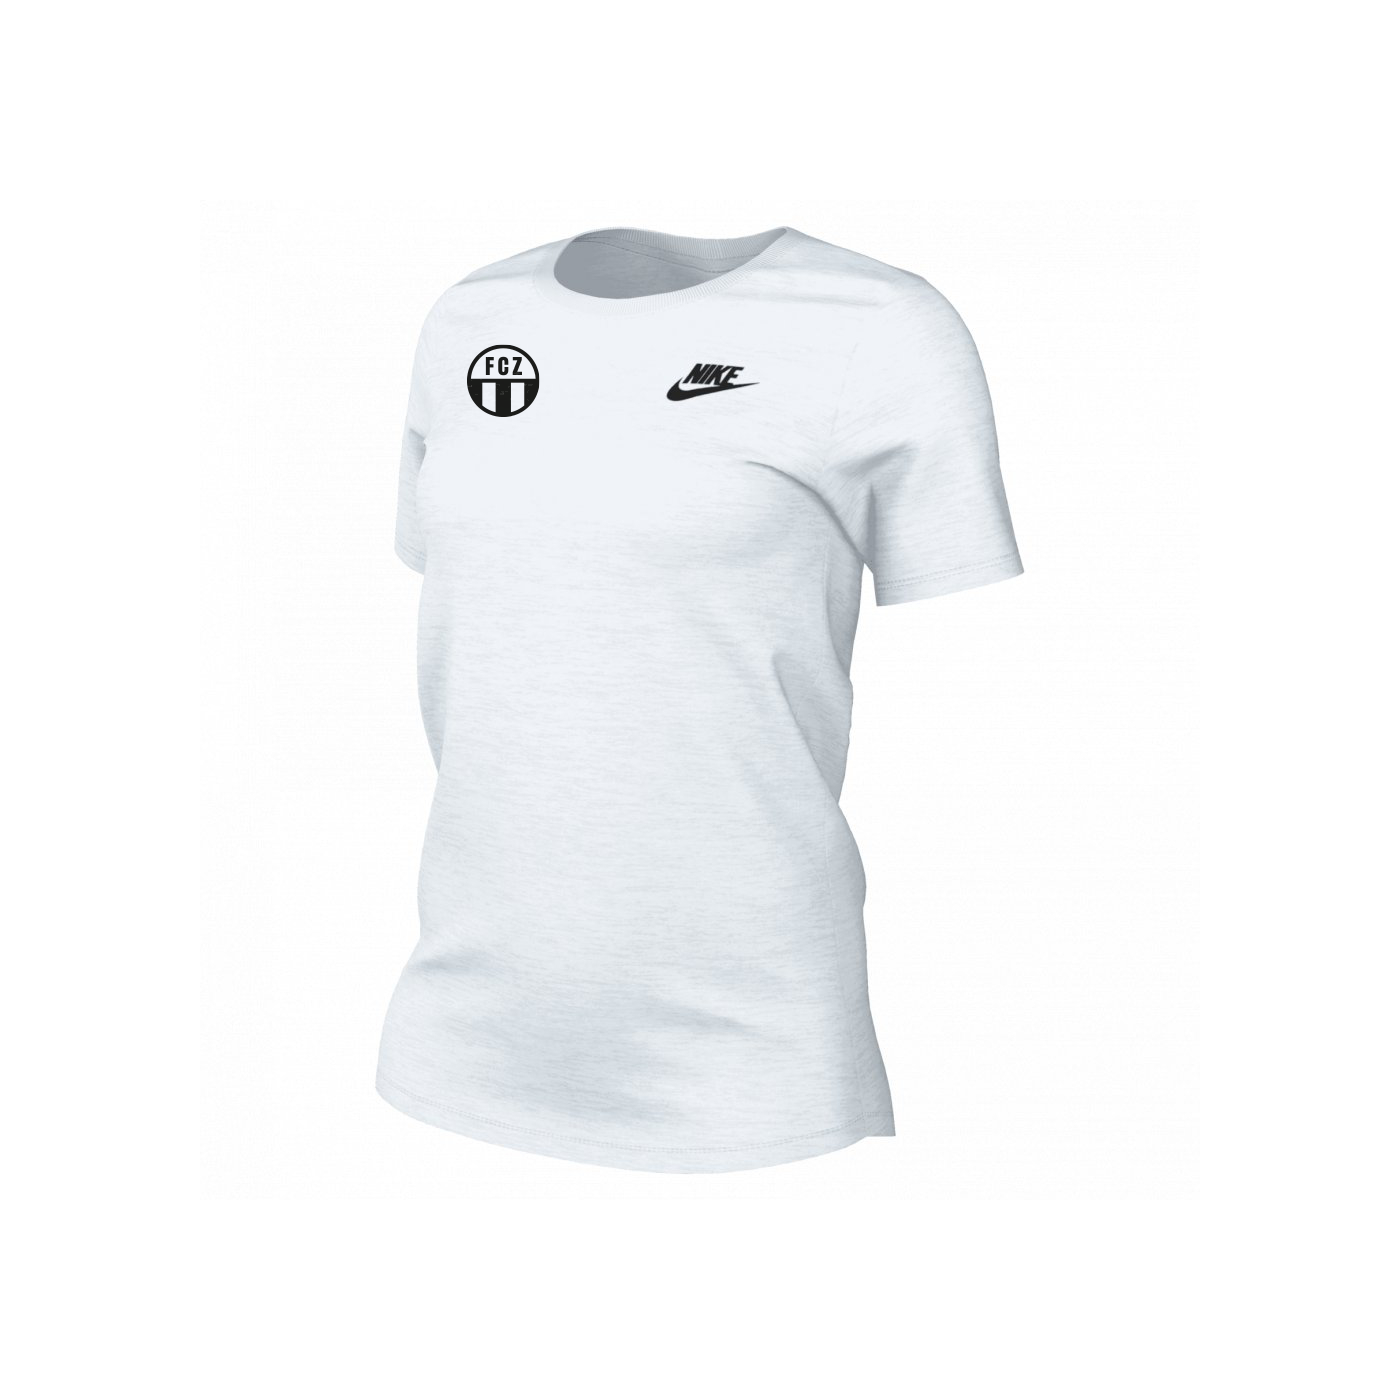 Shirt Nike Weiss Logo Patch Woman